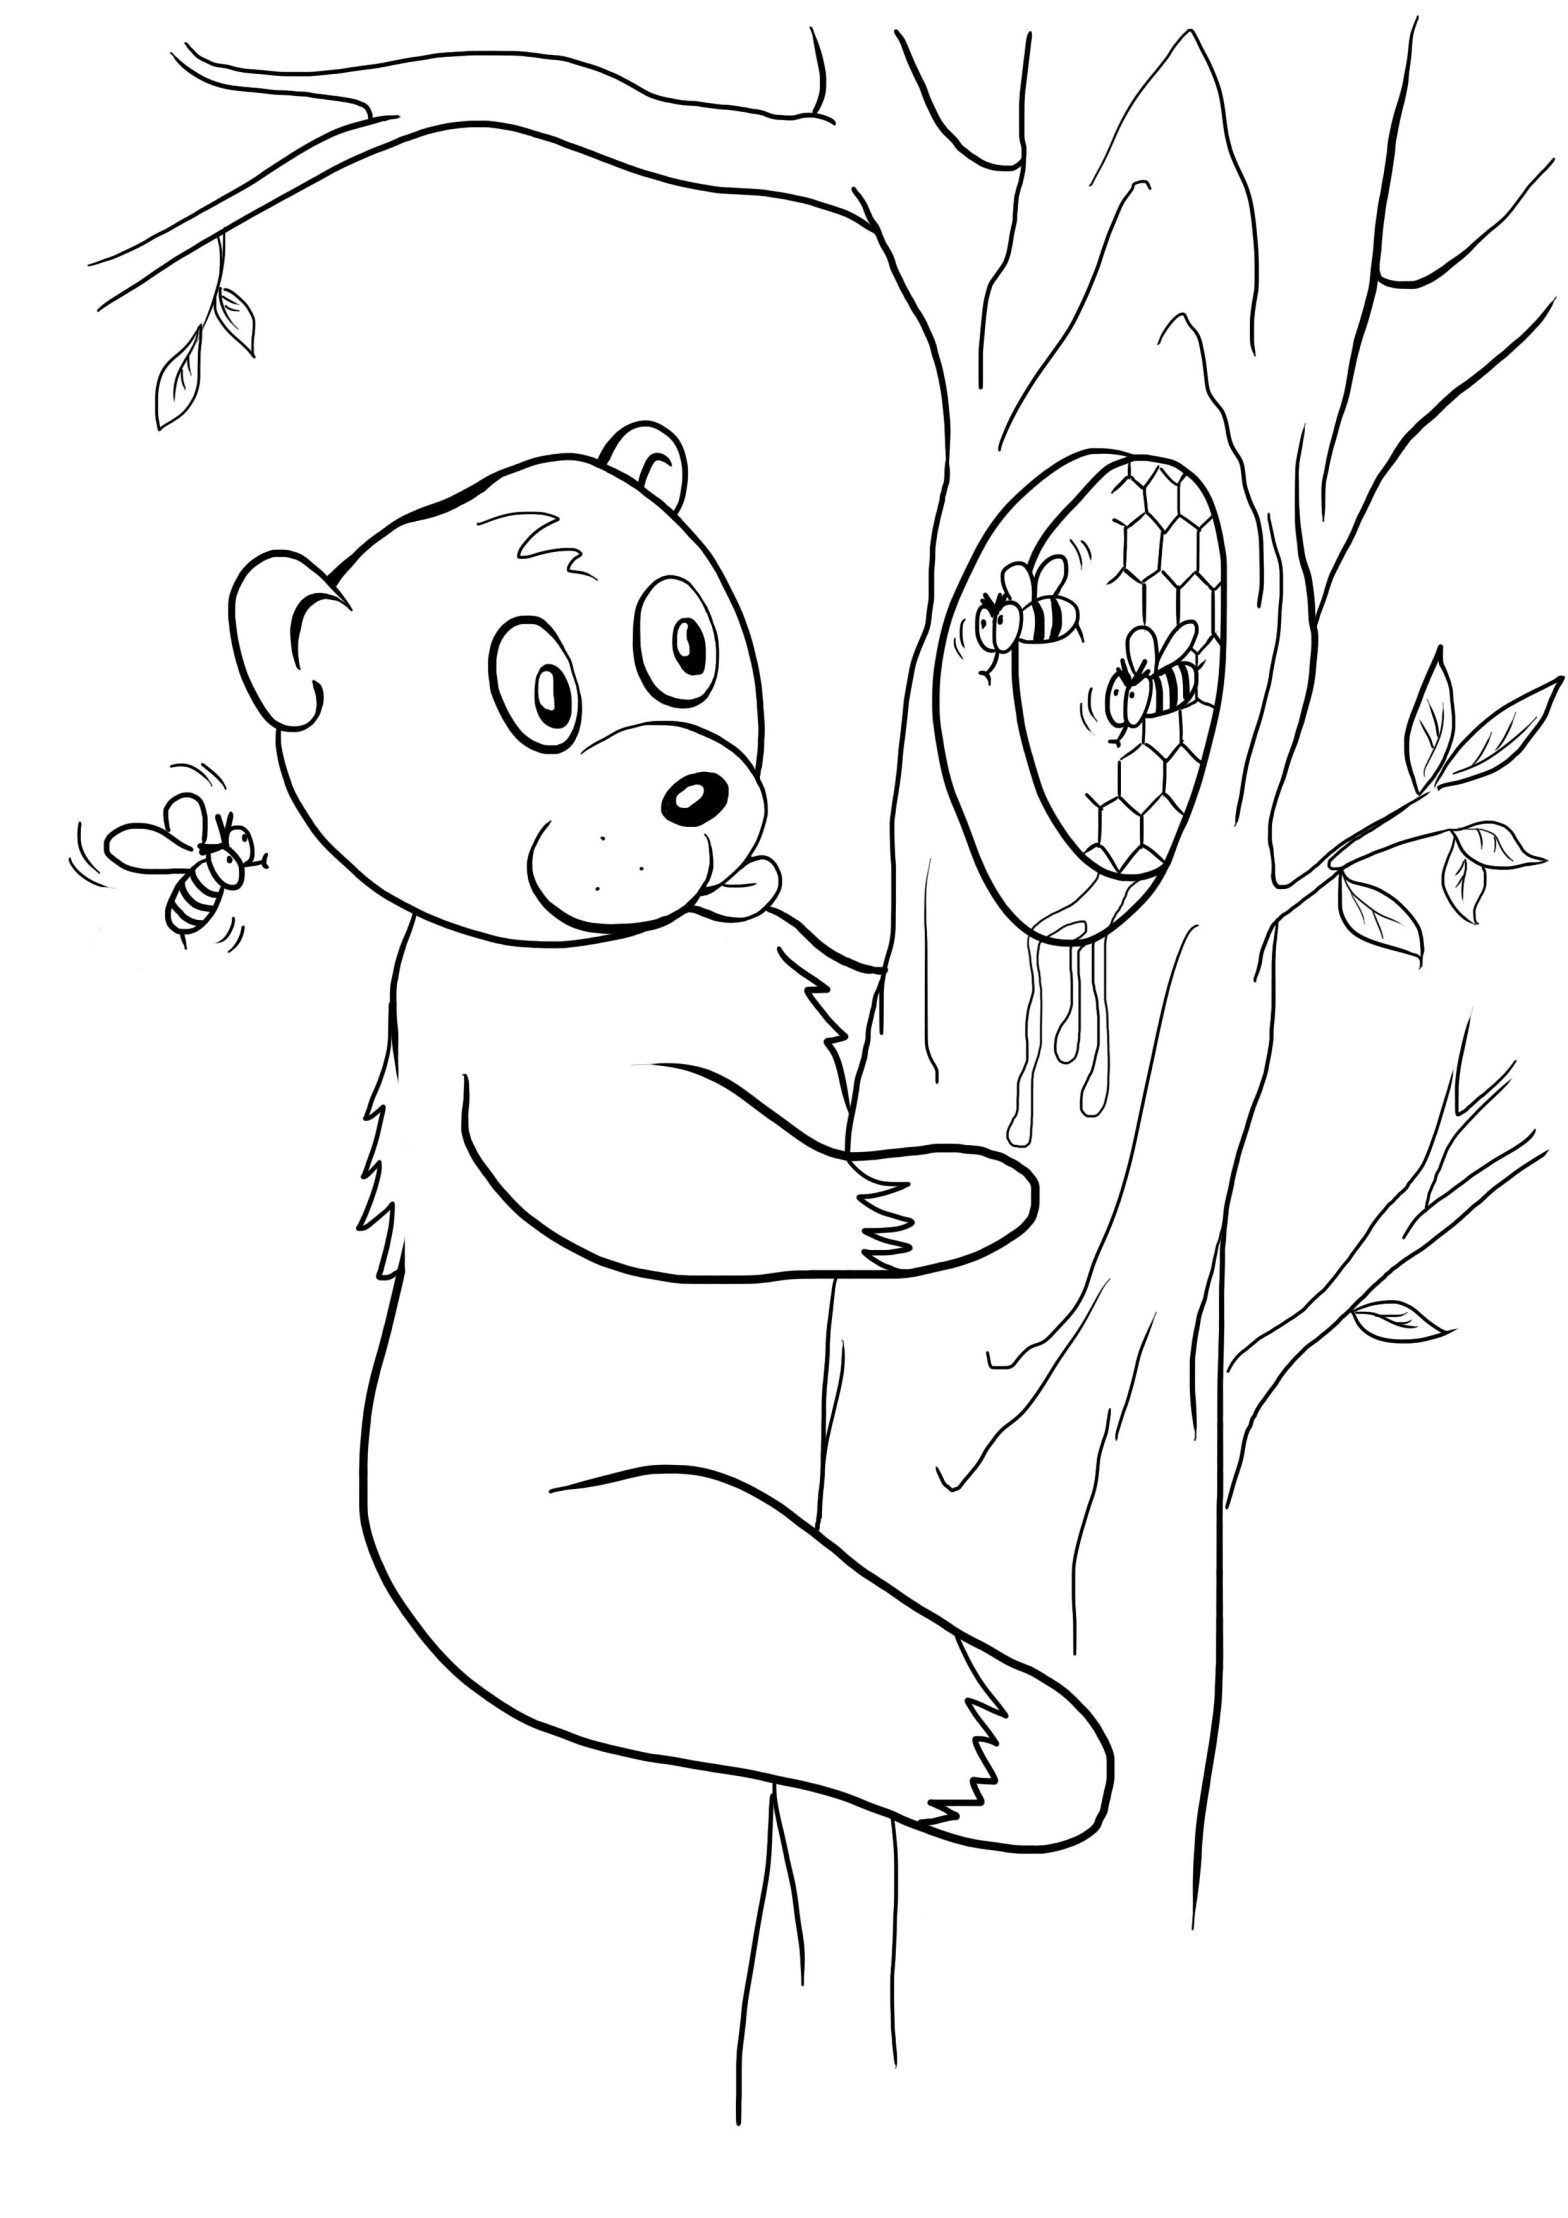 Медведь лезет на дерево за медом. Раскраски для мальчиков. (медведь, дерево, пчелы)